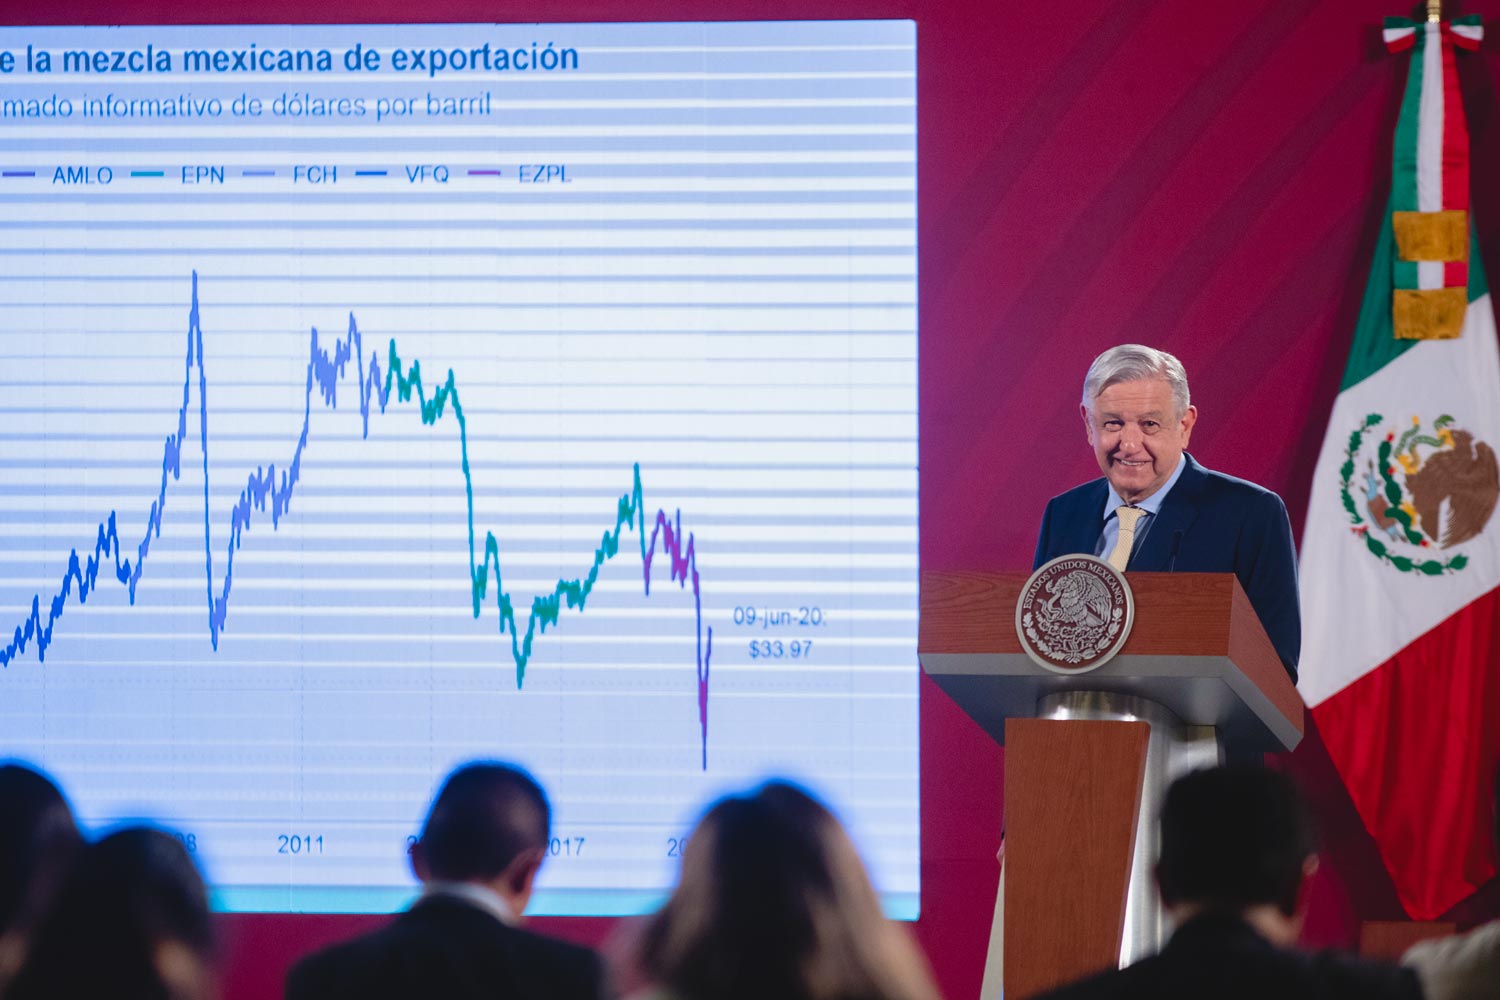 Economía mexicana muestra recuperación en medio de crisis generada por COVID-19: AMLO